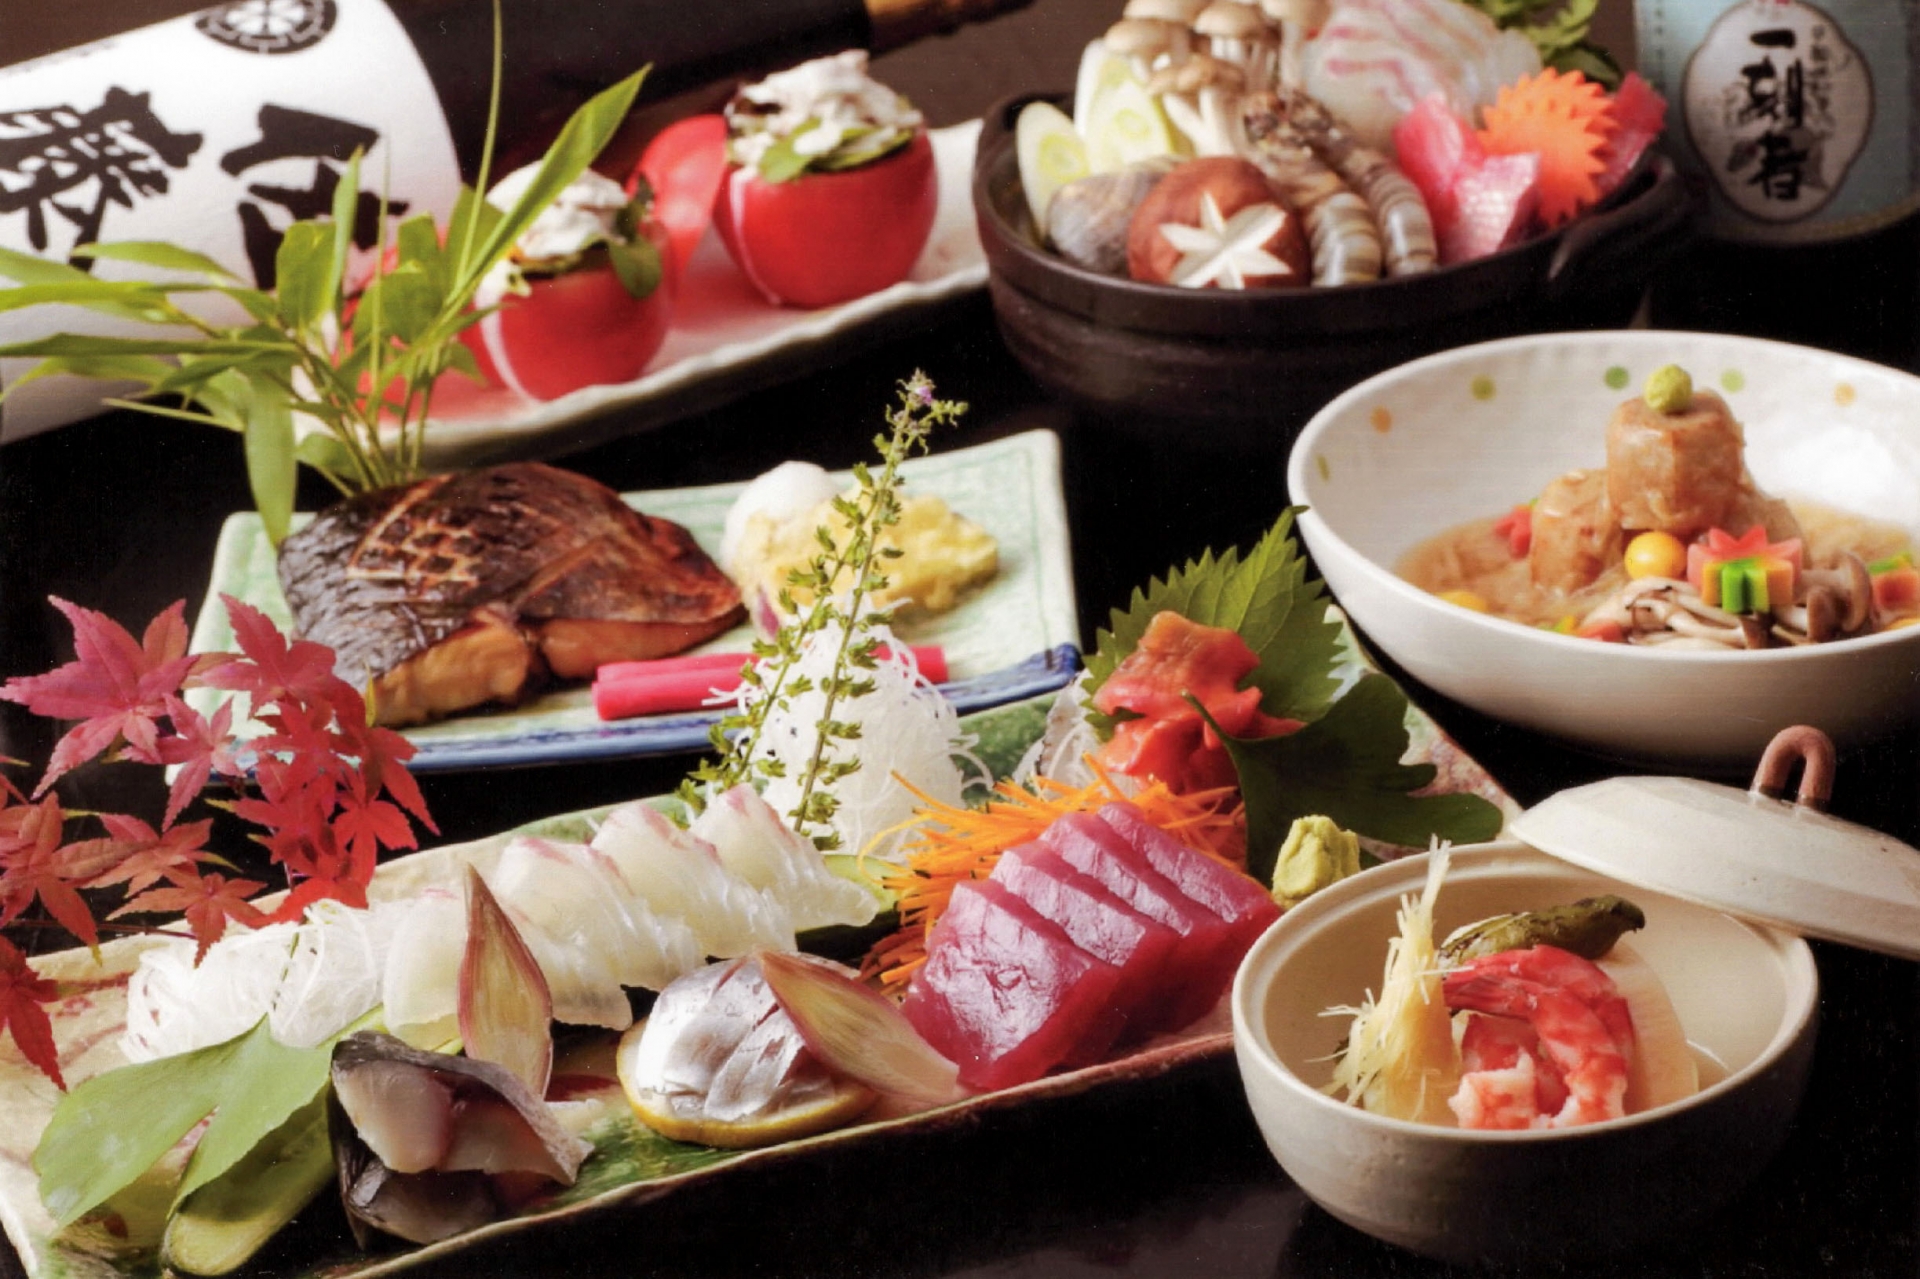 上野の和食店を紹介 ランチやディナーに使いたい老舗やデート向けの個室も Travelnote トラベルノート